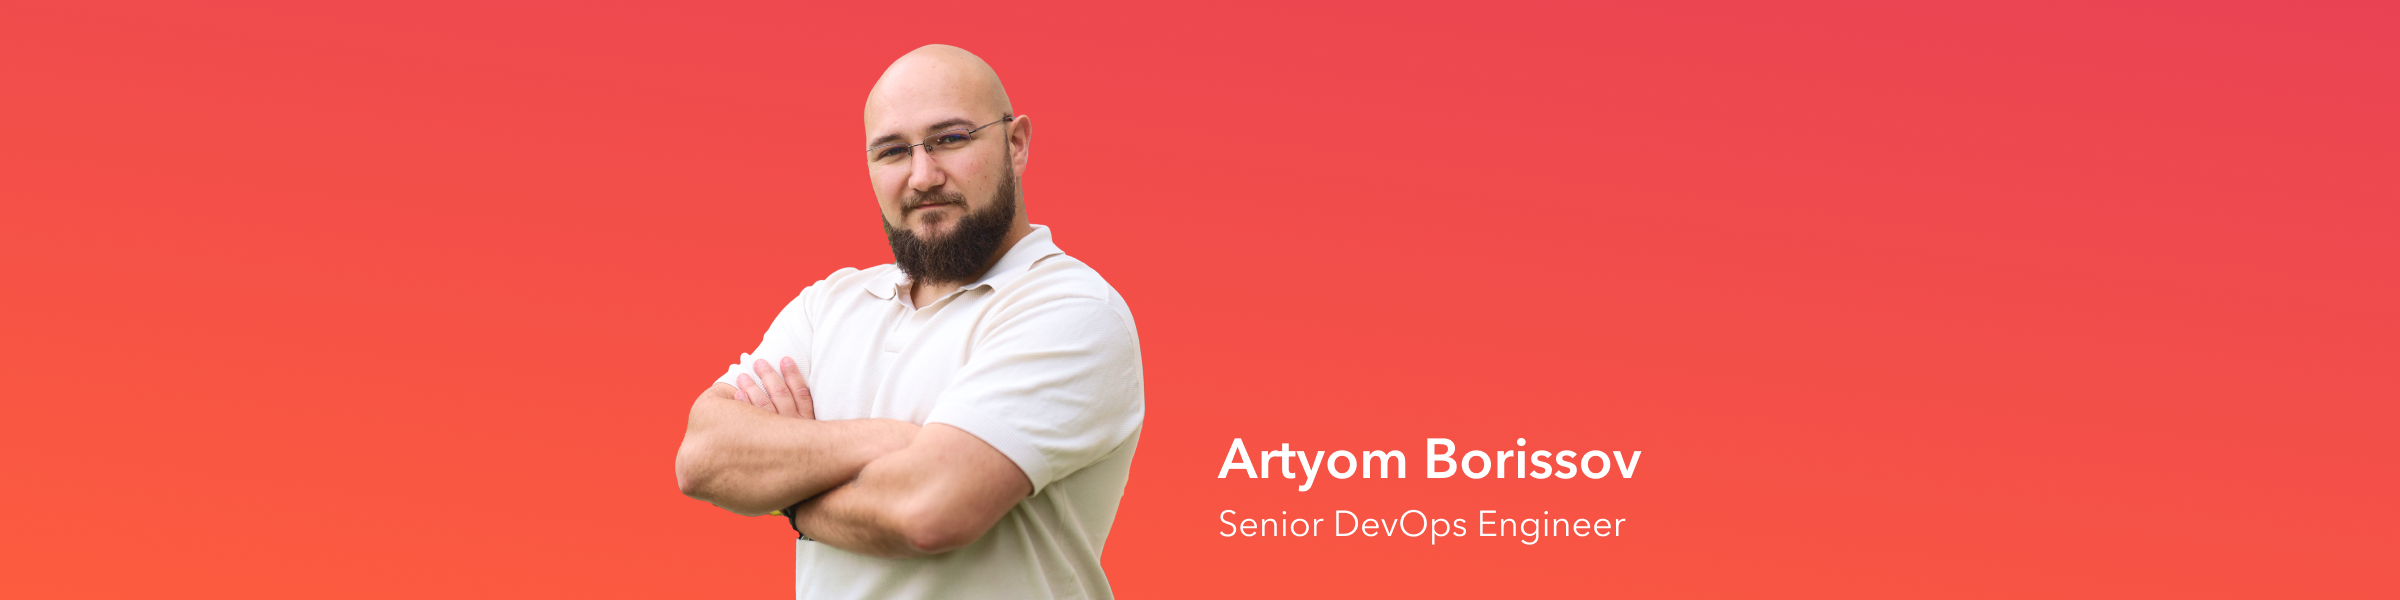 meet team openprovider: artyom